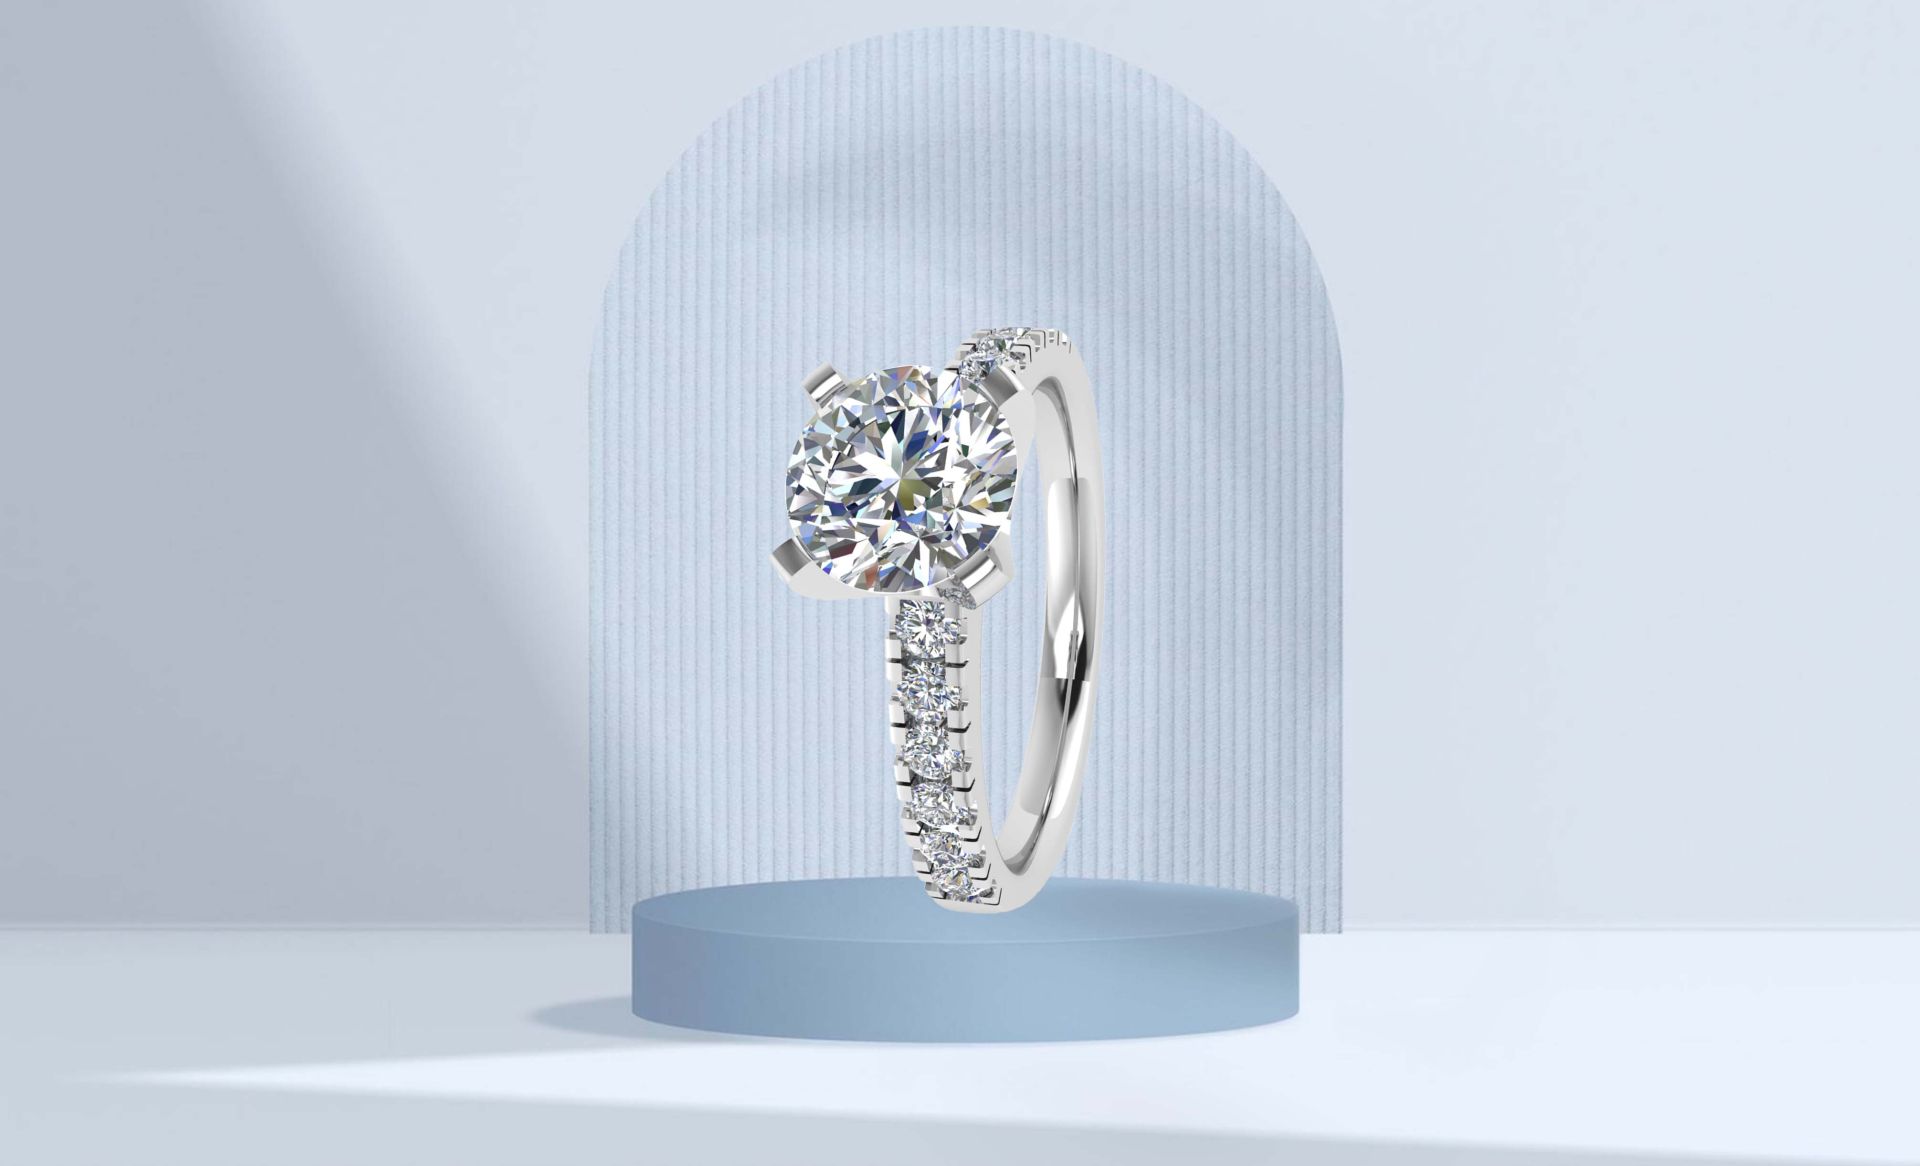 Adori Millennium, Engagement Rings in Antwerp, Engagement Rings, Diamond Rings, Diamond Jewellery From Antwerp, Engagement Rings, Eternity Rings, Earrings, Pendants